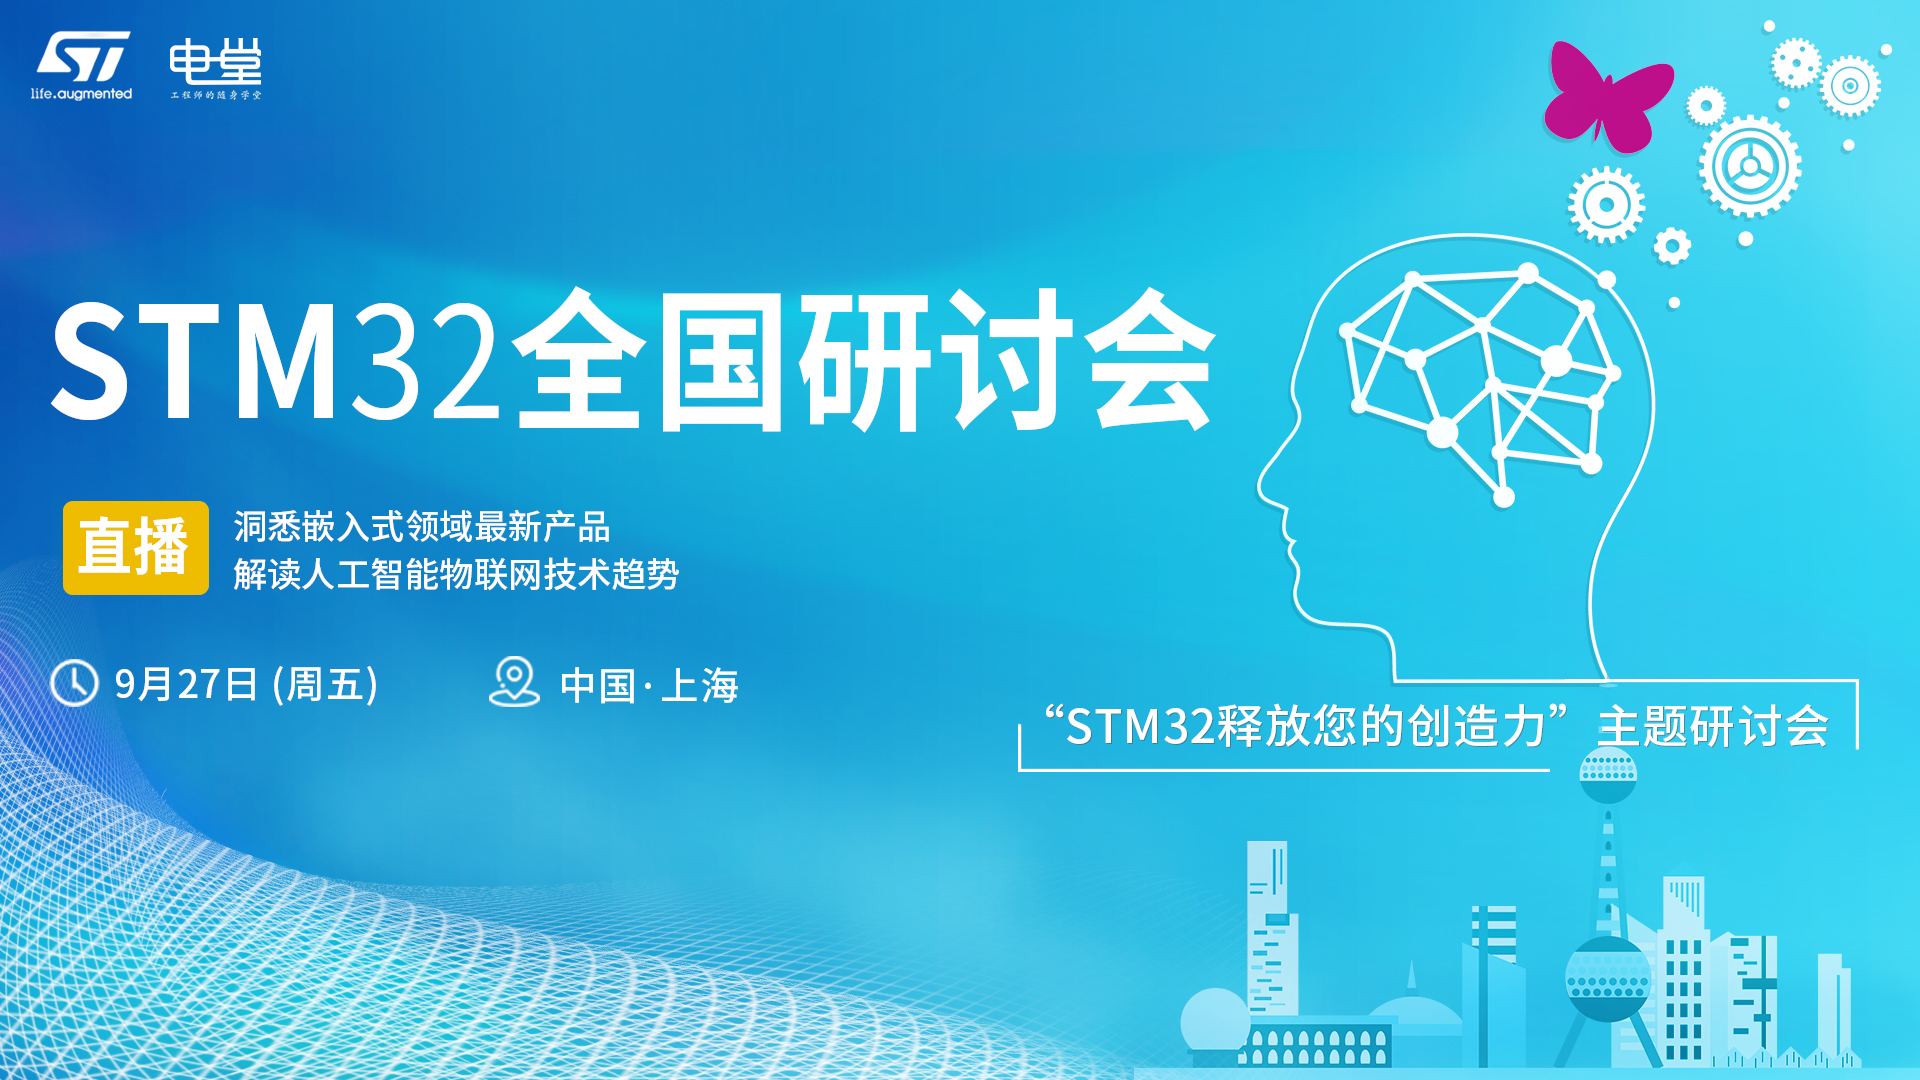 2019年STM32全国巡回研讨会